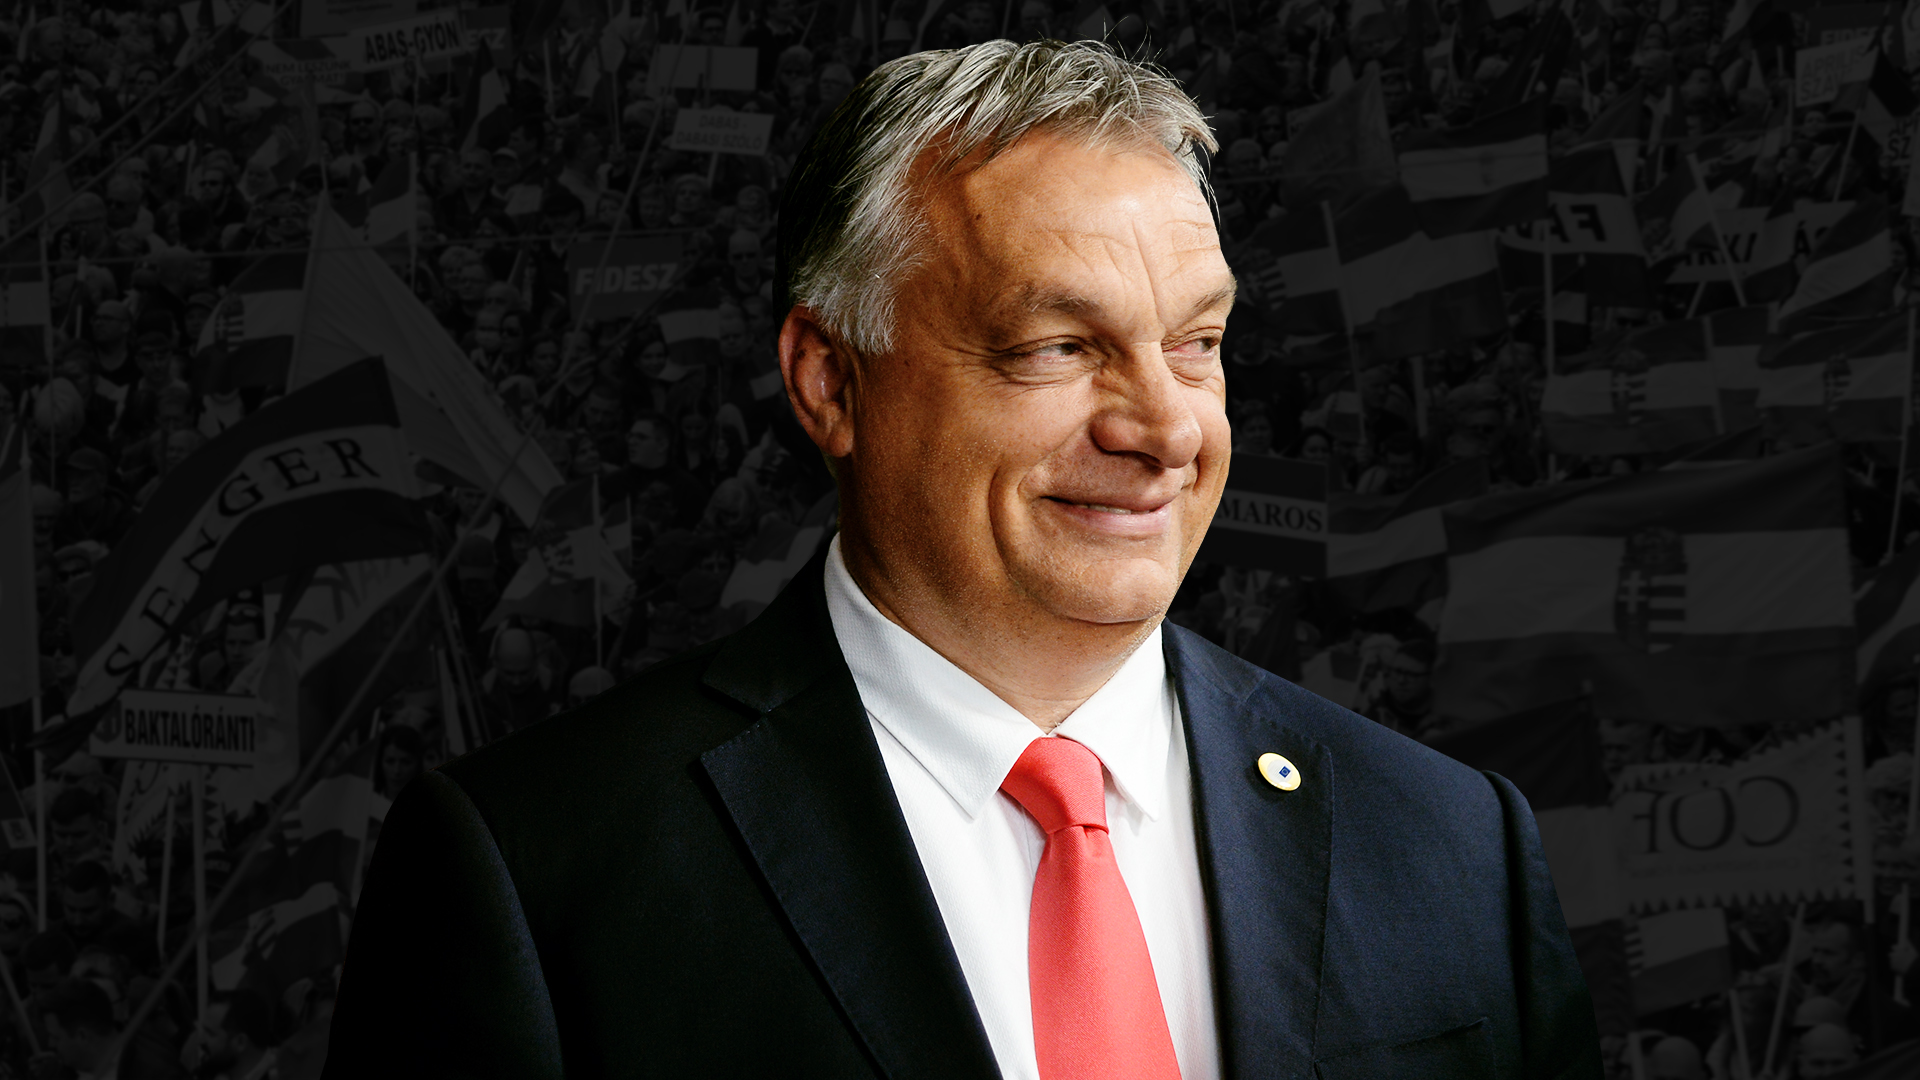 Itt nézheti élőben Orbán Viktor győzelmi beszédét